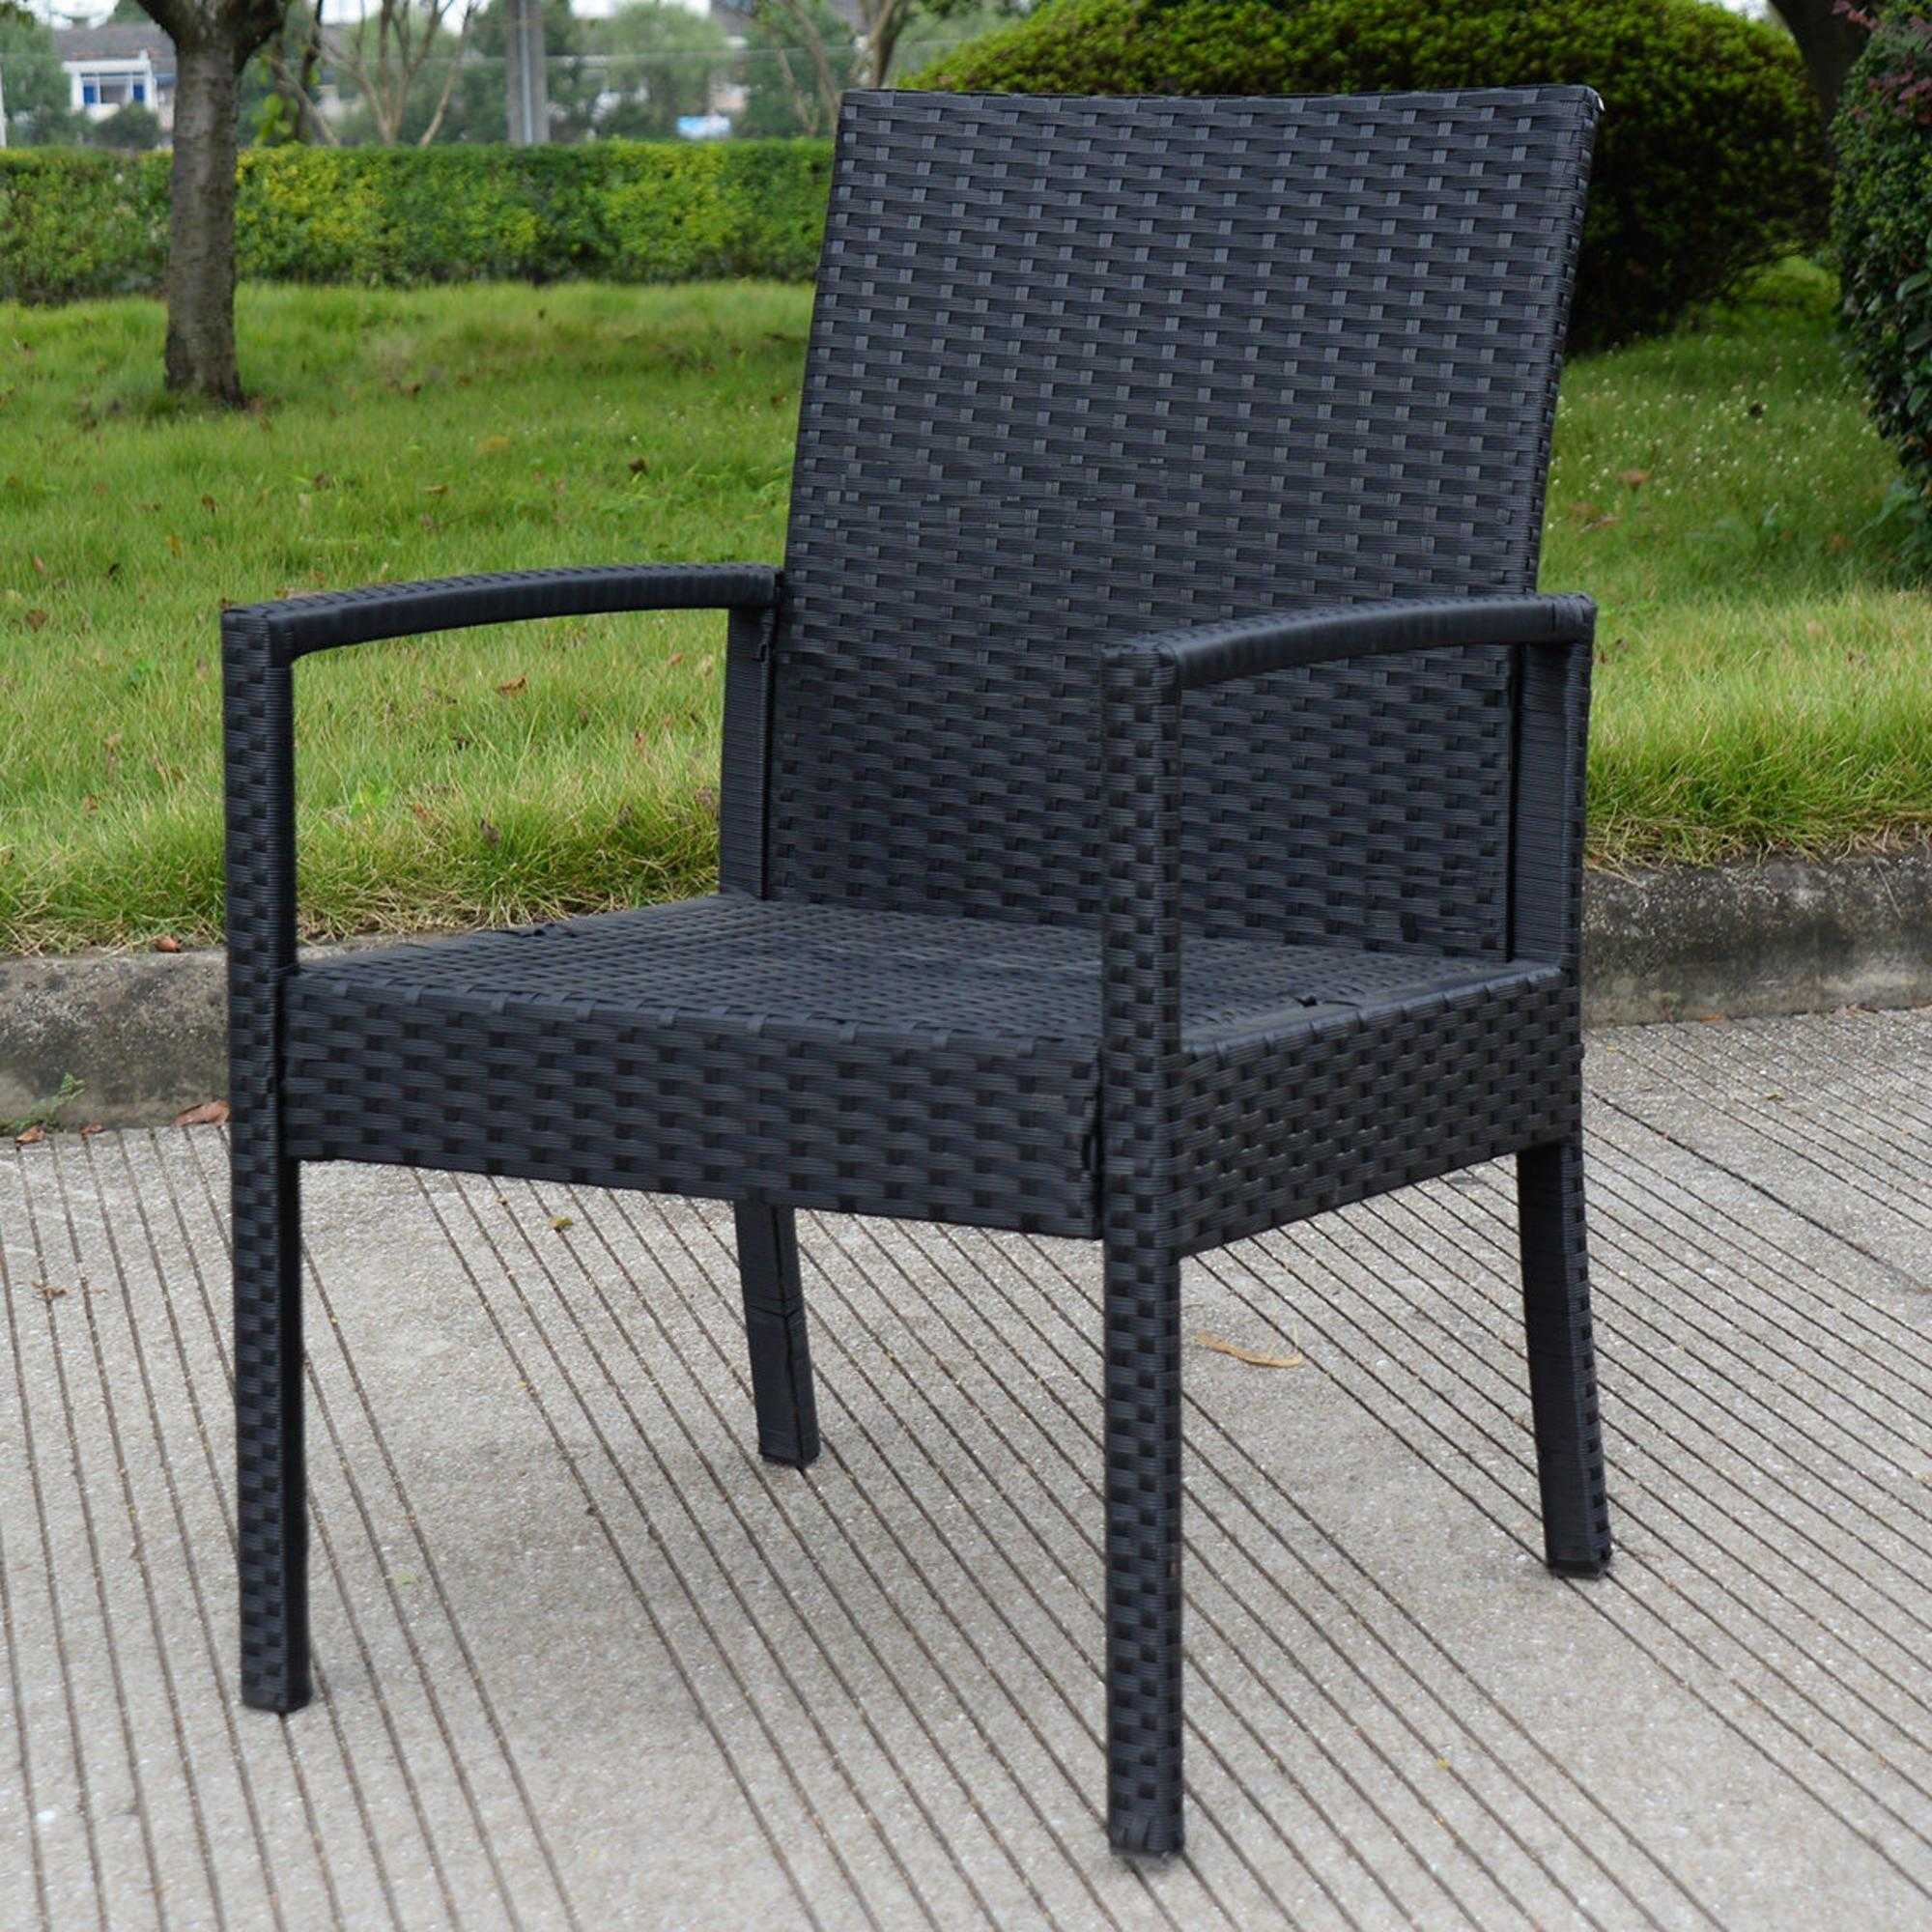 Goplus 1 PS Outdoor Rattan Patio Chair